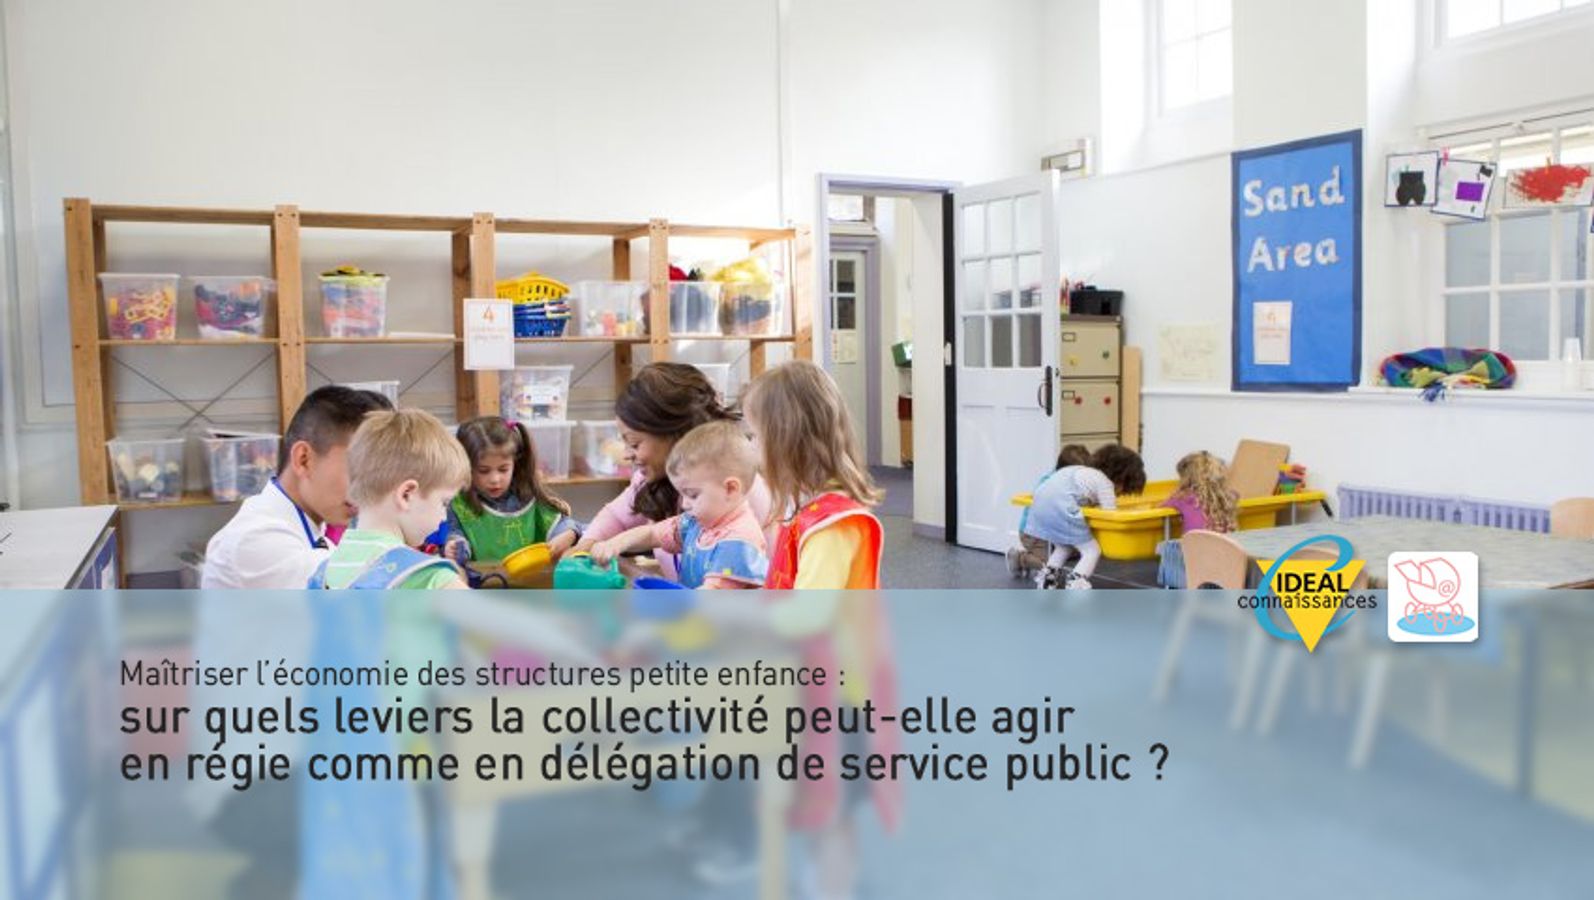 Maîtriser l’économie des structures petite enfance : sur quels leviers la collectivité peut-elle agir en régie comme en délégation de service public ?